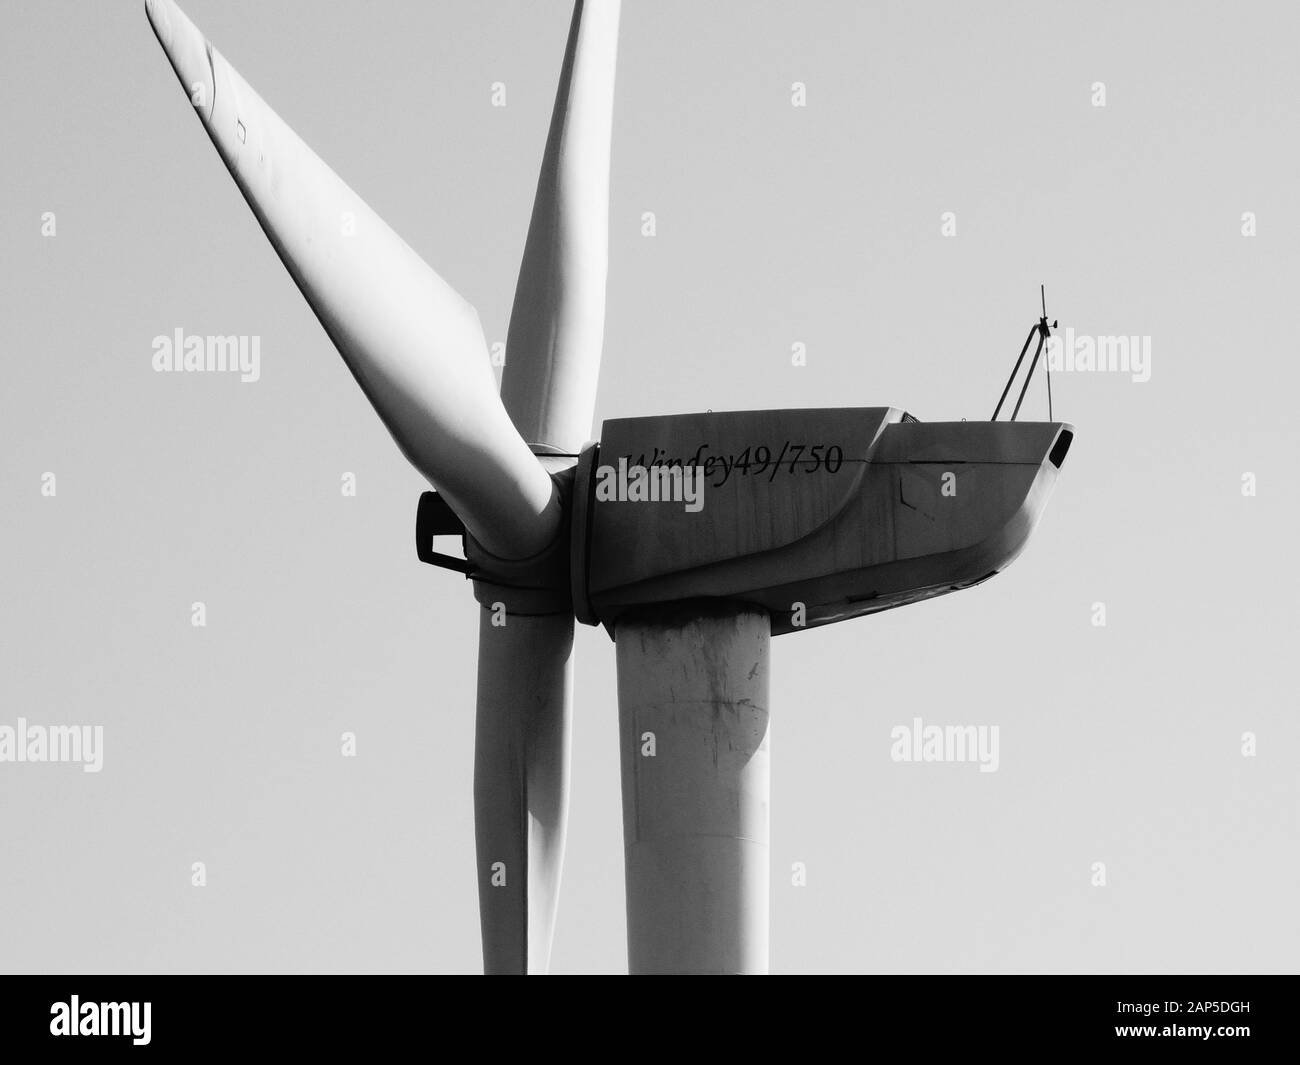 Zhejiang, Chine - 30 mars 2014 : éolienne Winne 49/750 sur la montagne Kuocang vue rapprochée Banque D'Images